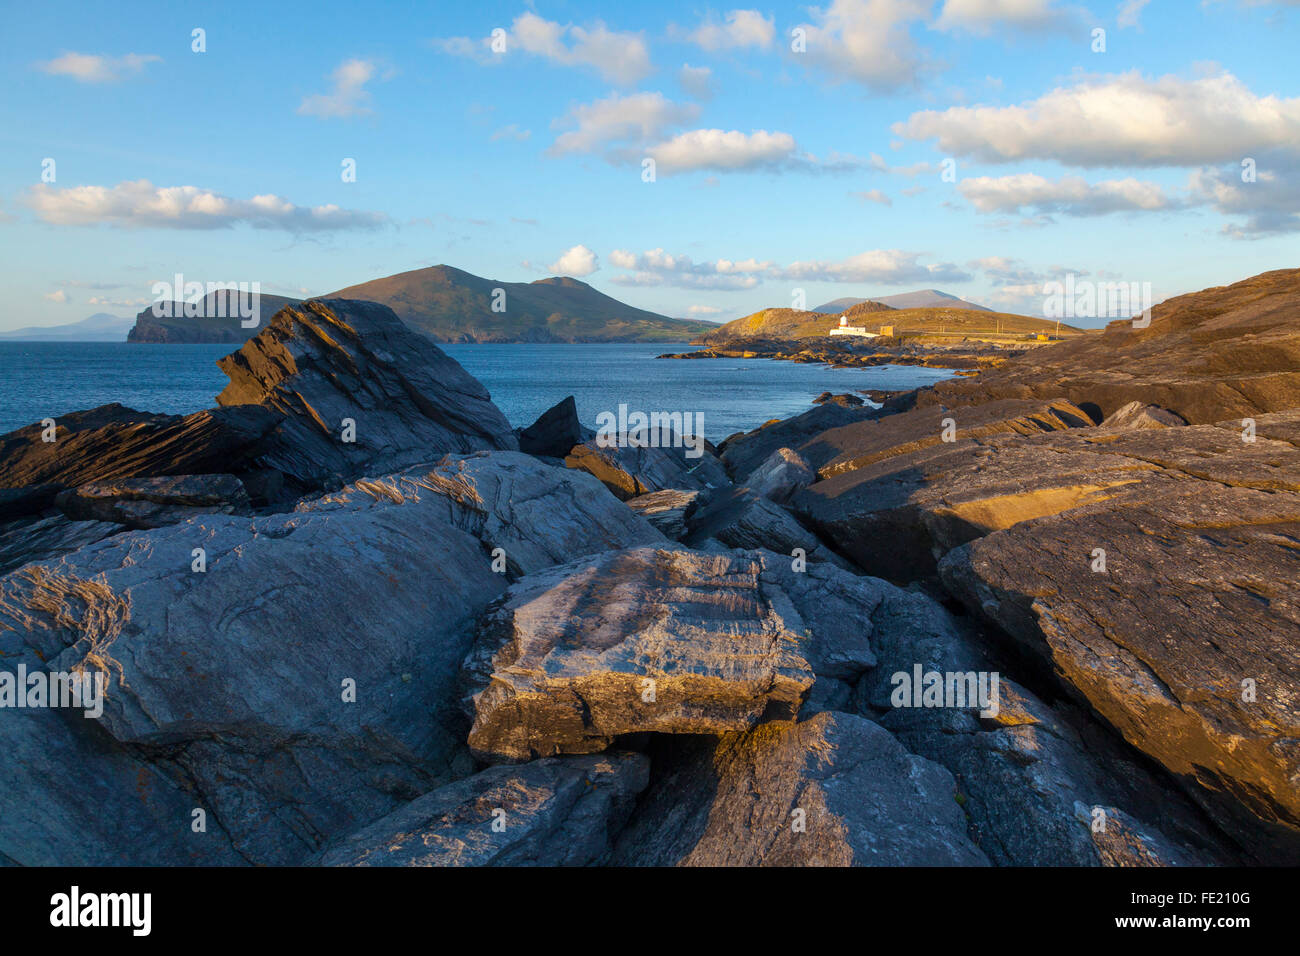 Côte Rocheuse près de Cromwell Point Lighthouse, Valentia Island, comté de Kerry, Irlande. Banque D'Images